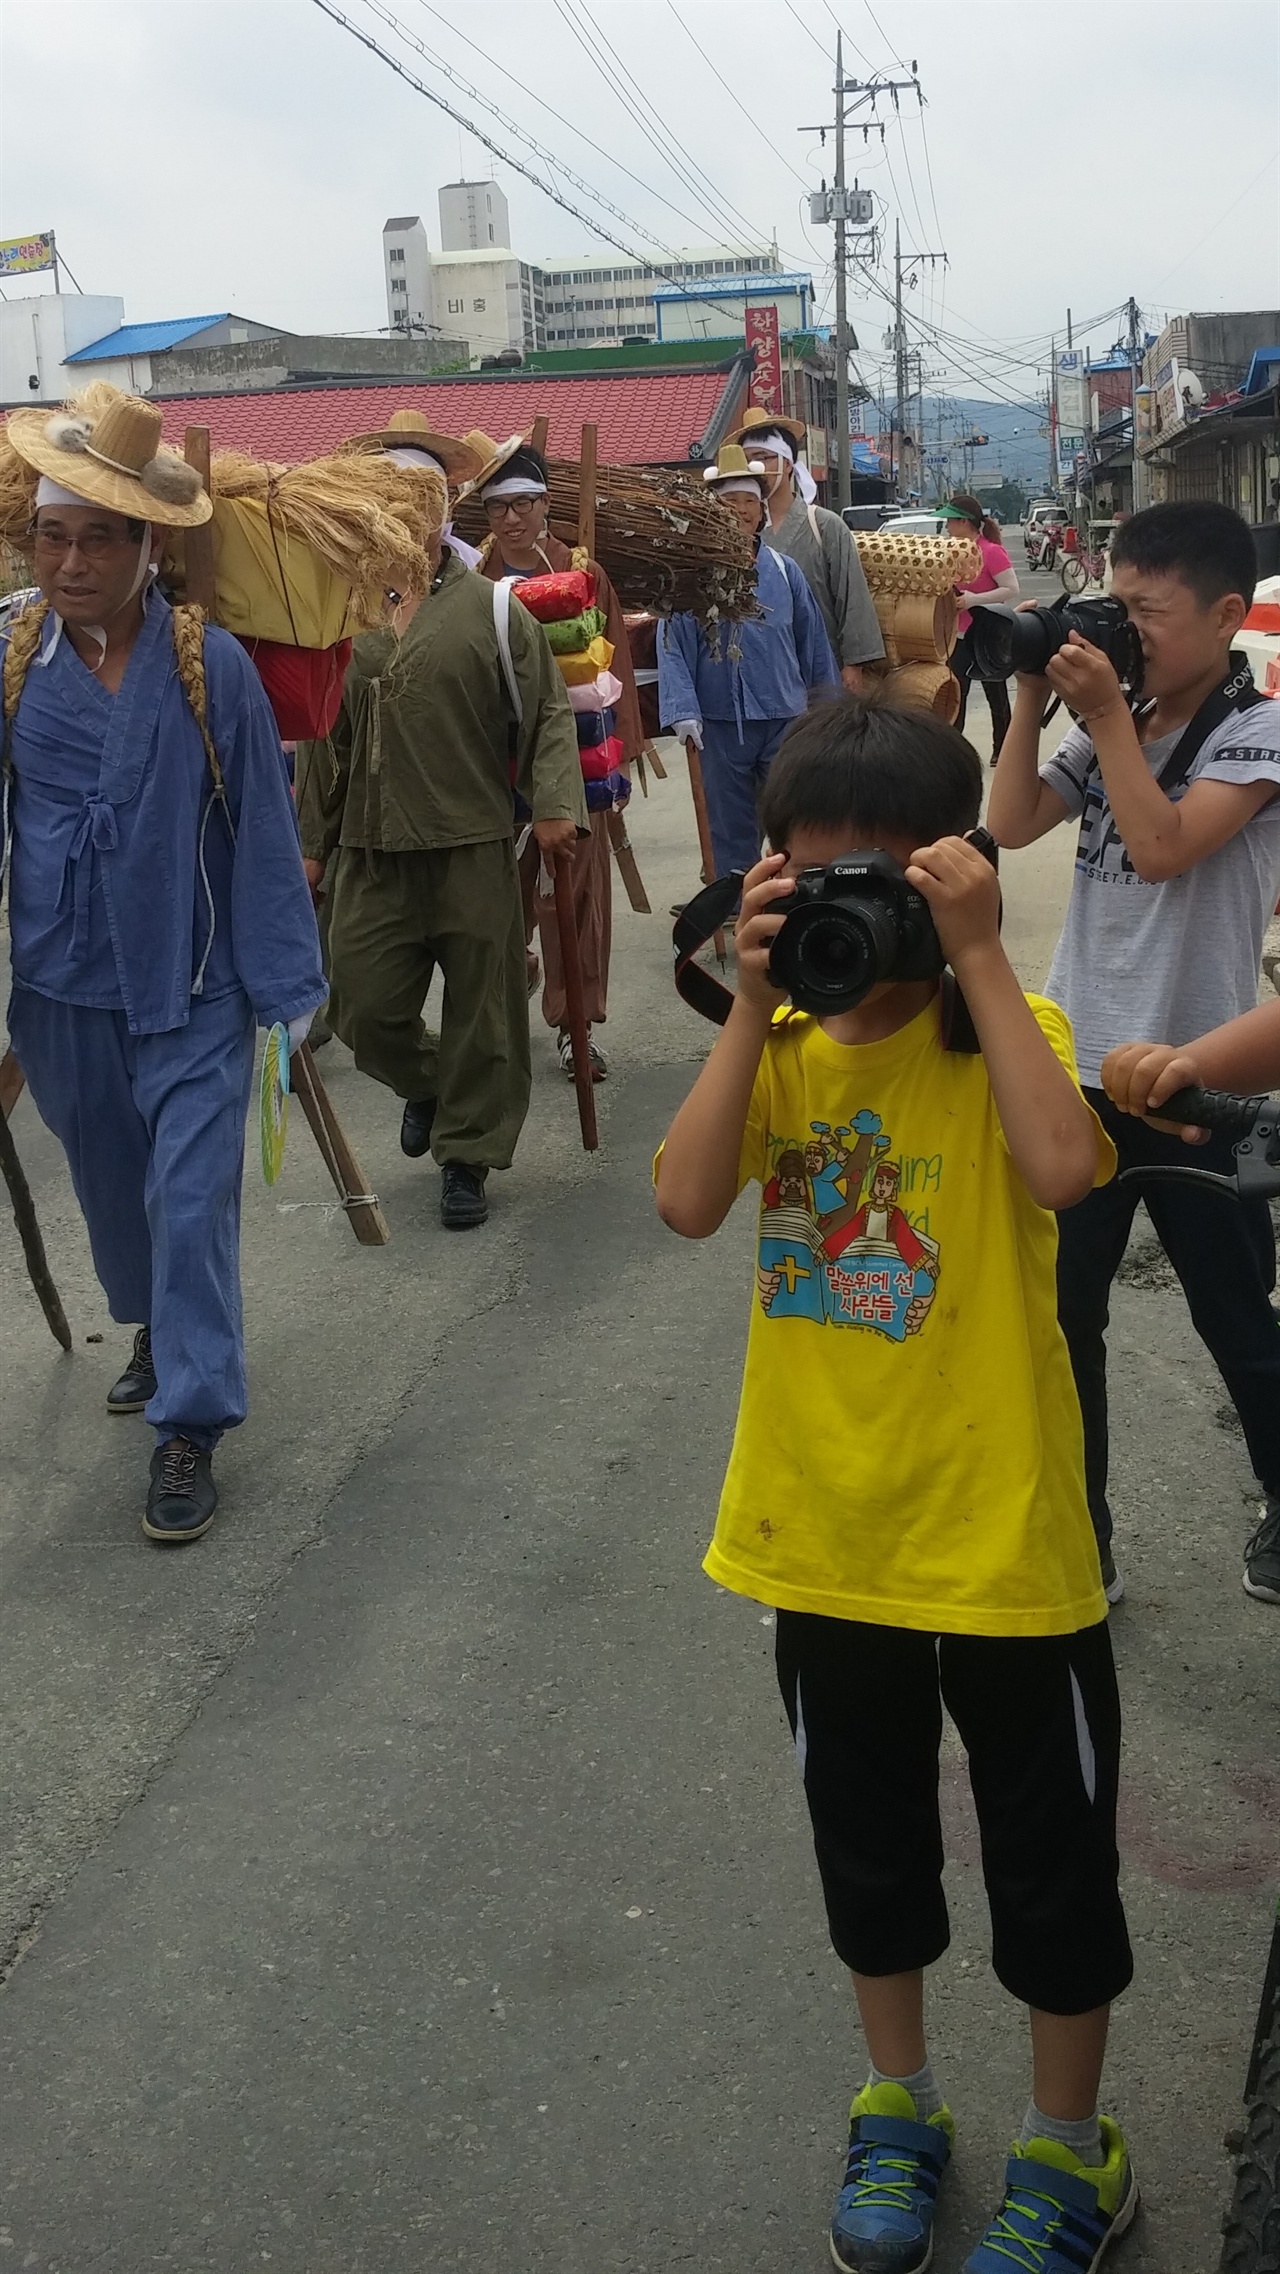 홍산의 파워 블로거인 꼬마 사진가들의 취재 경쟁이 치열하다. 